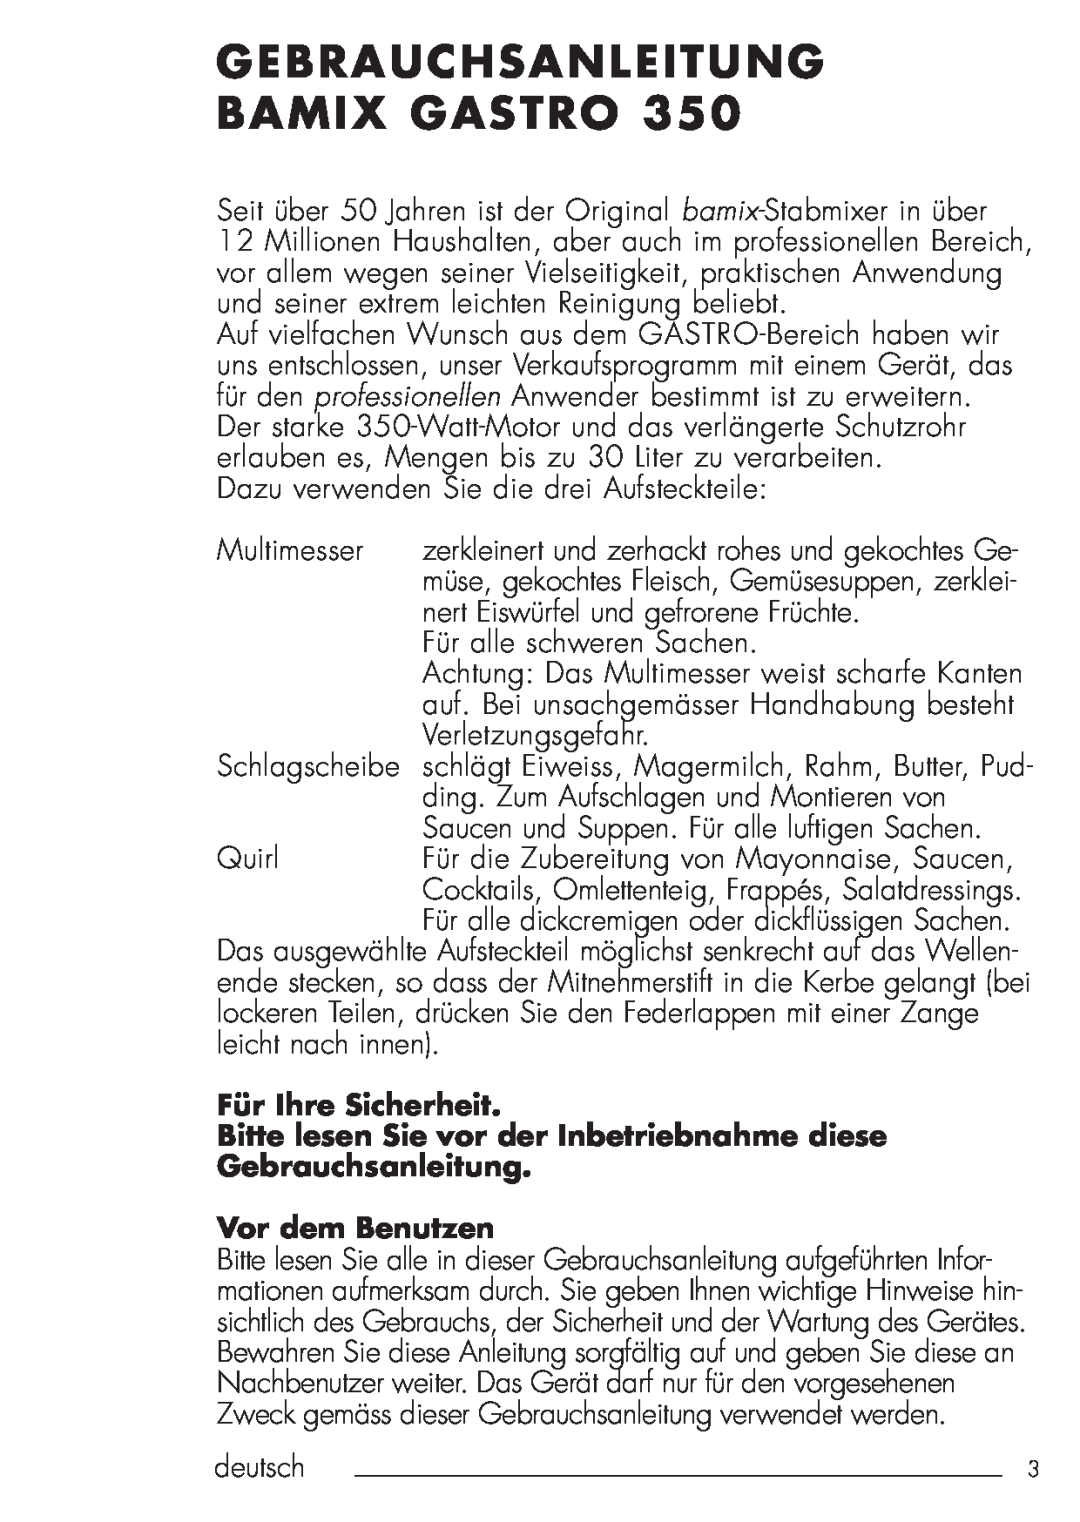 Bamix 106.031 Gebrauchsanleitung Bamix Gastro, Für Ihre Sicherheit, Bitte lesen Sie vor der Inbetriebnahme diese, deutsch 